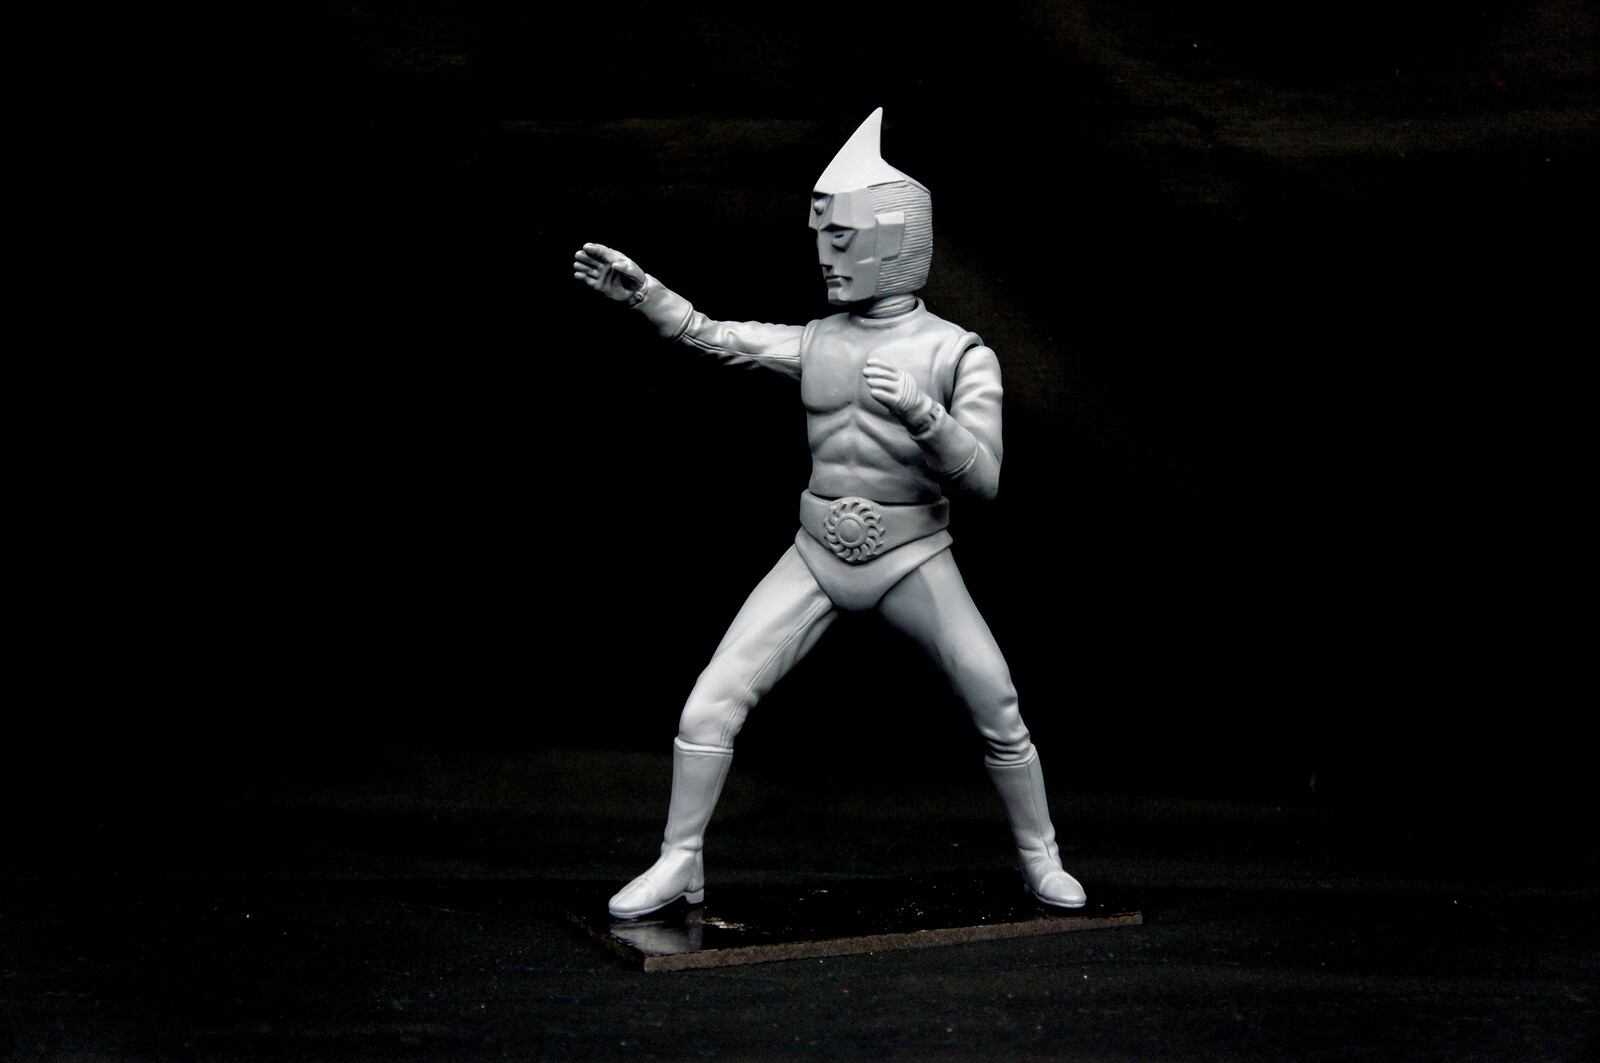 原型制作Robin Kwok: スペクトルマン 30 cm
original sculpt 30 cm Spectreman
https://www.solidart.club/